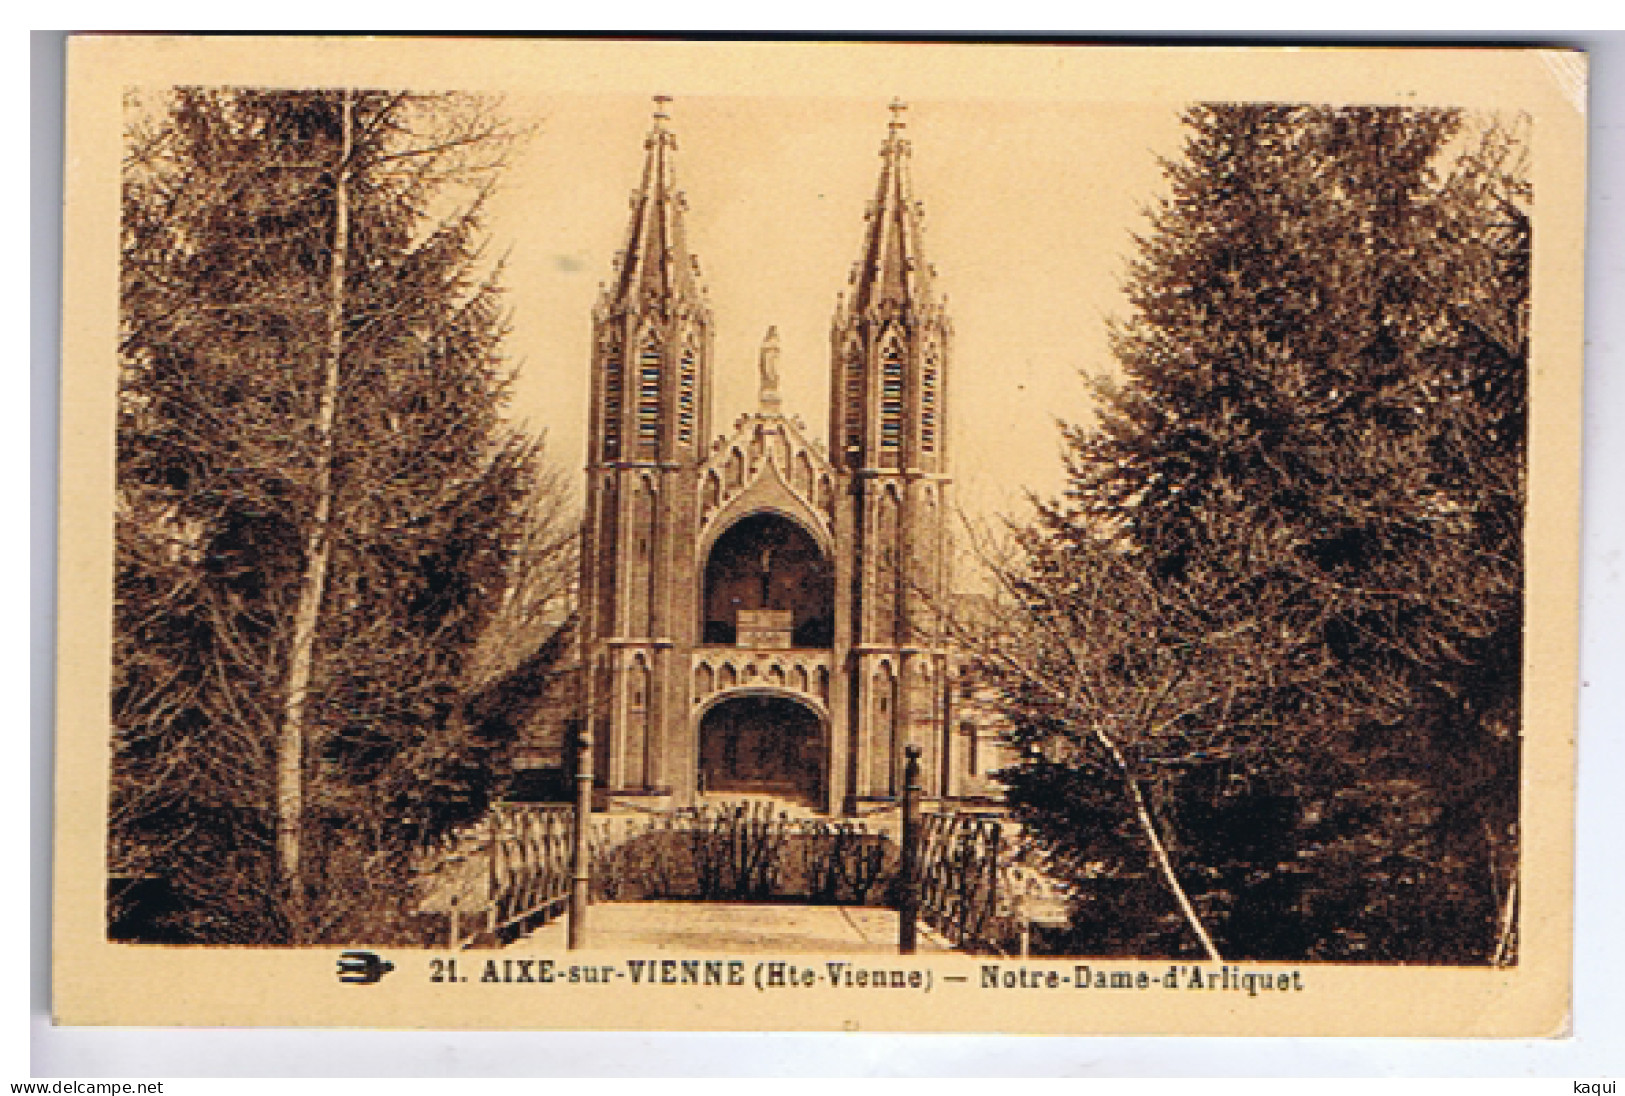 HAUTE-VIENNE - AIXE-sur-VIENNE - Notre-Dame D'Arliquet - N° 21 - Aixe Sur Vienne